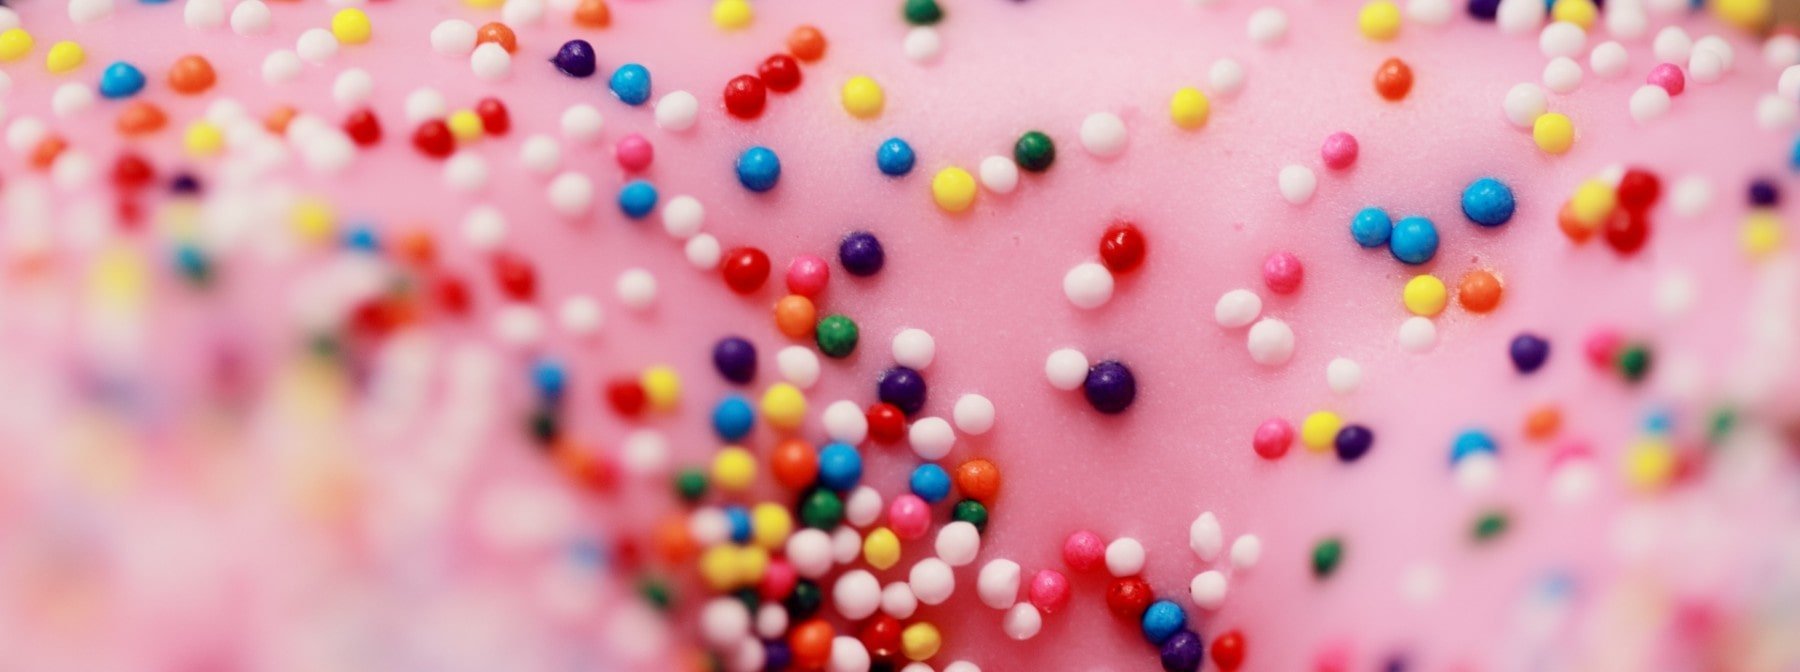 15 Ways To Stop Sugar Cravings